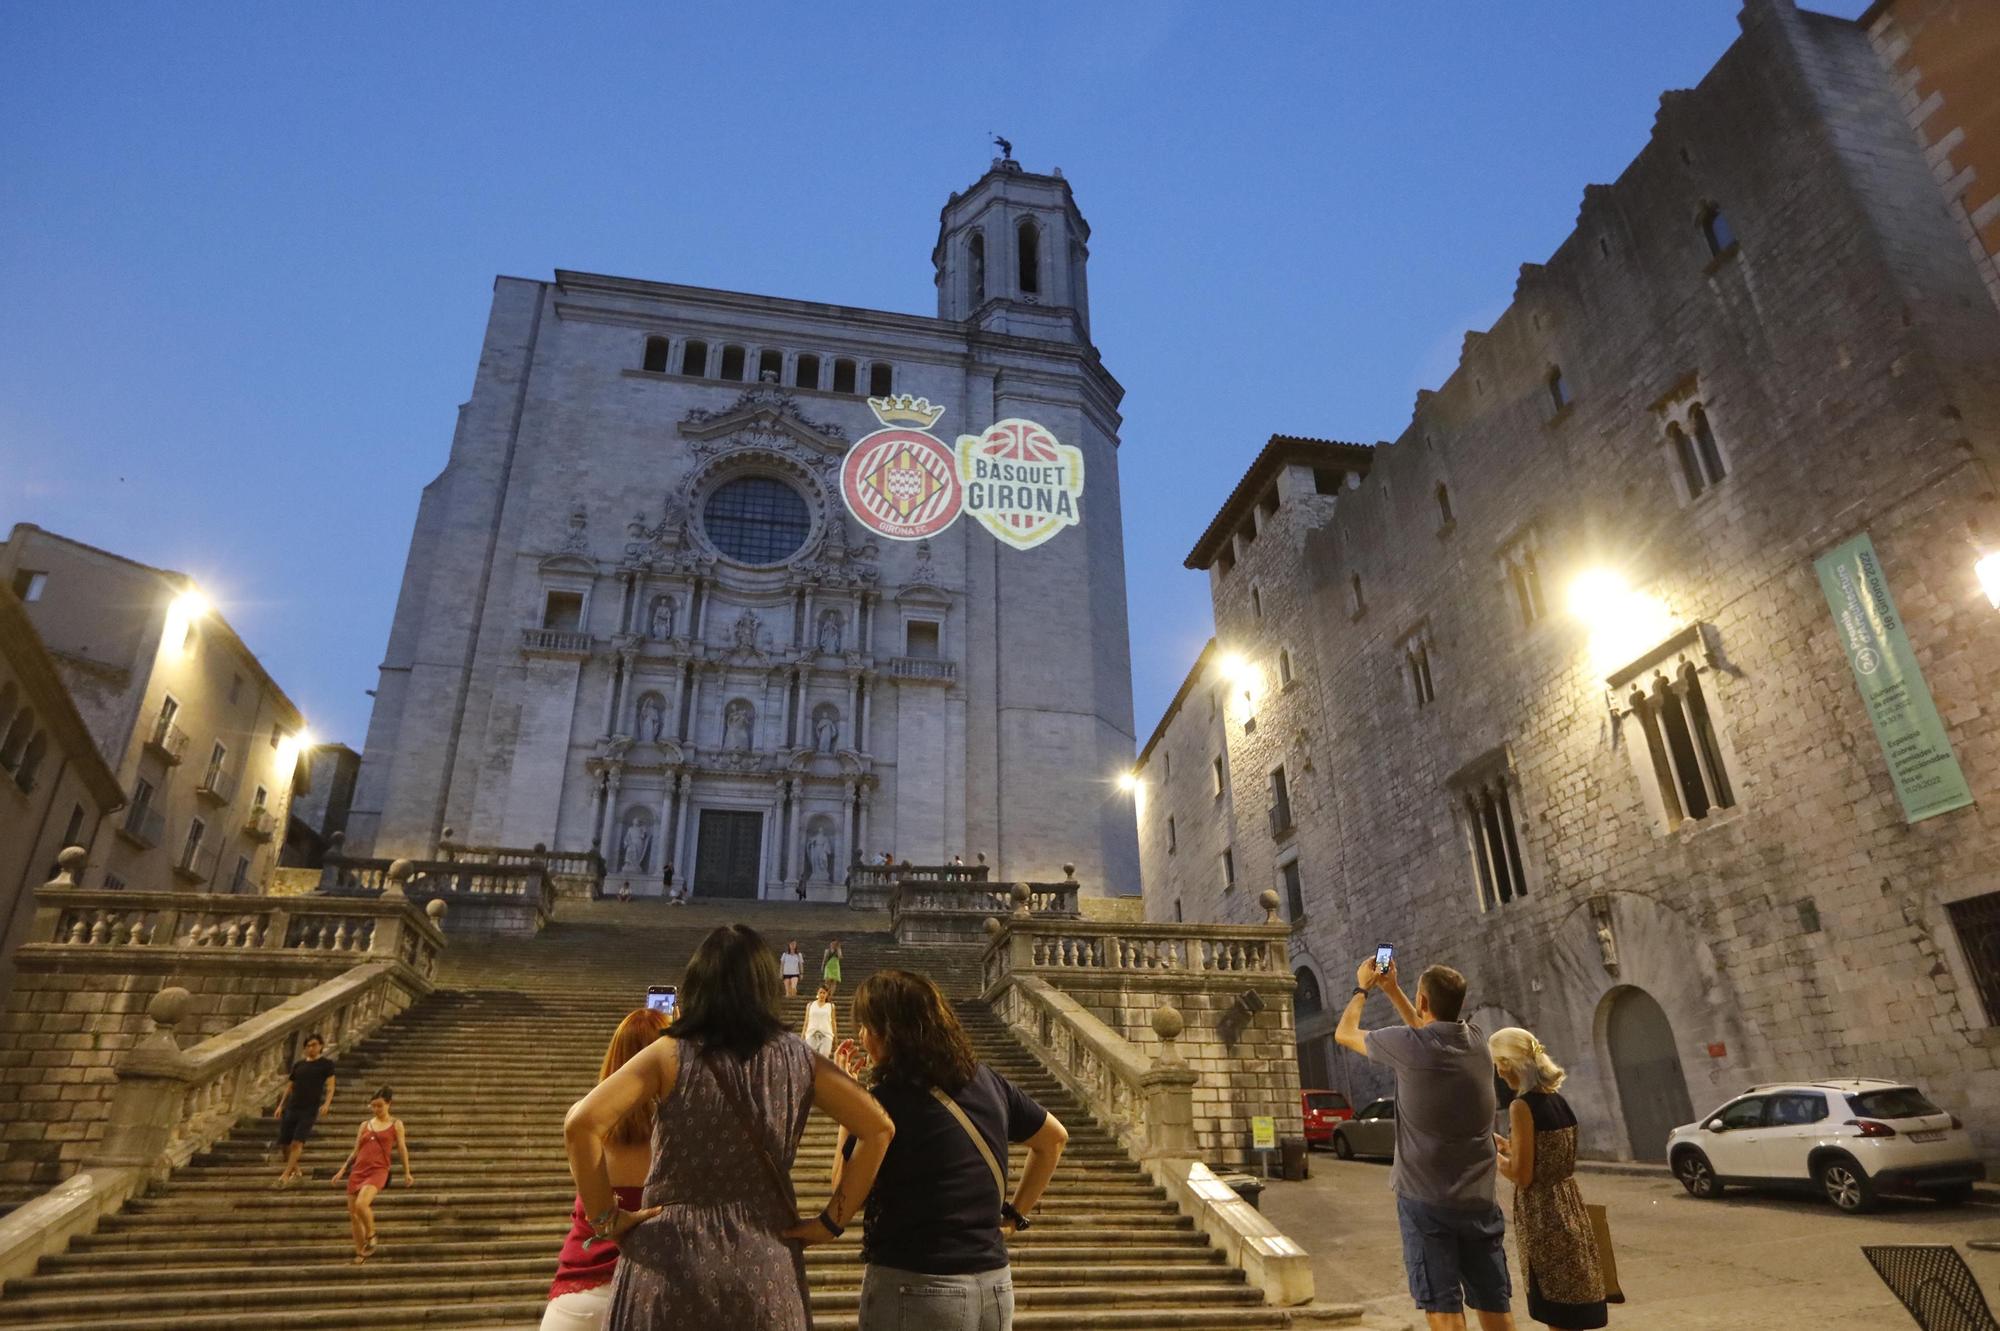 Els escuts del Girona i el Bàsquet Girona llueixen a la catedral